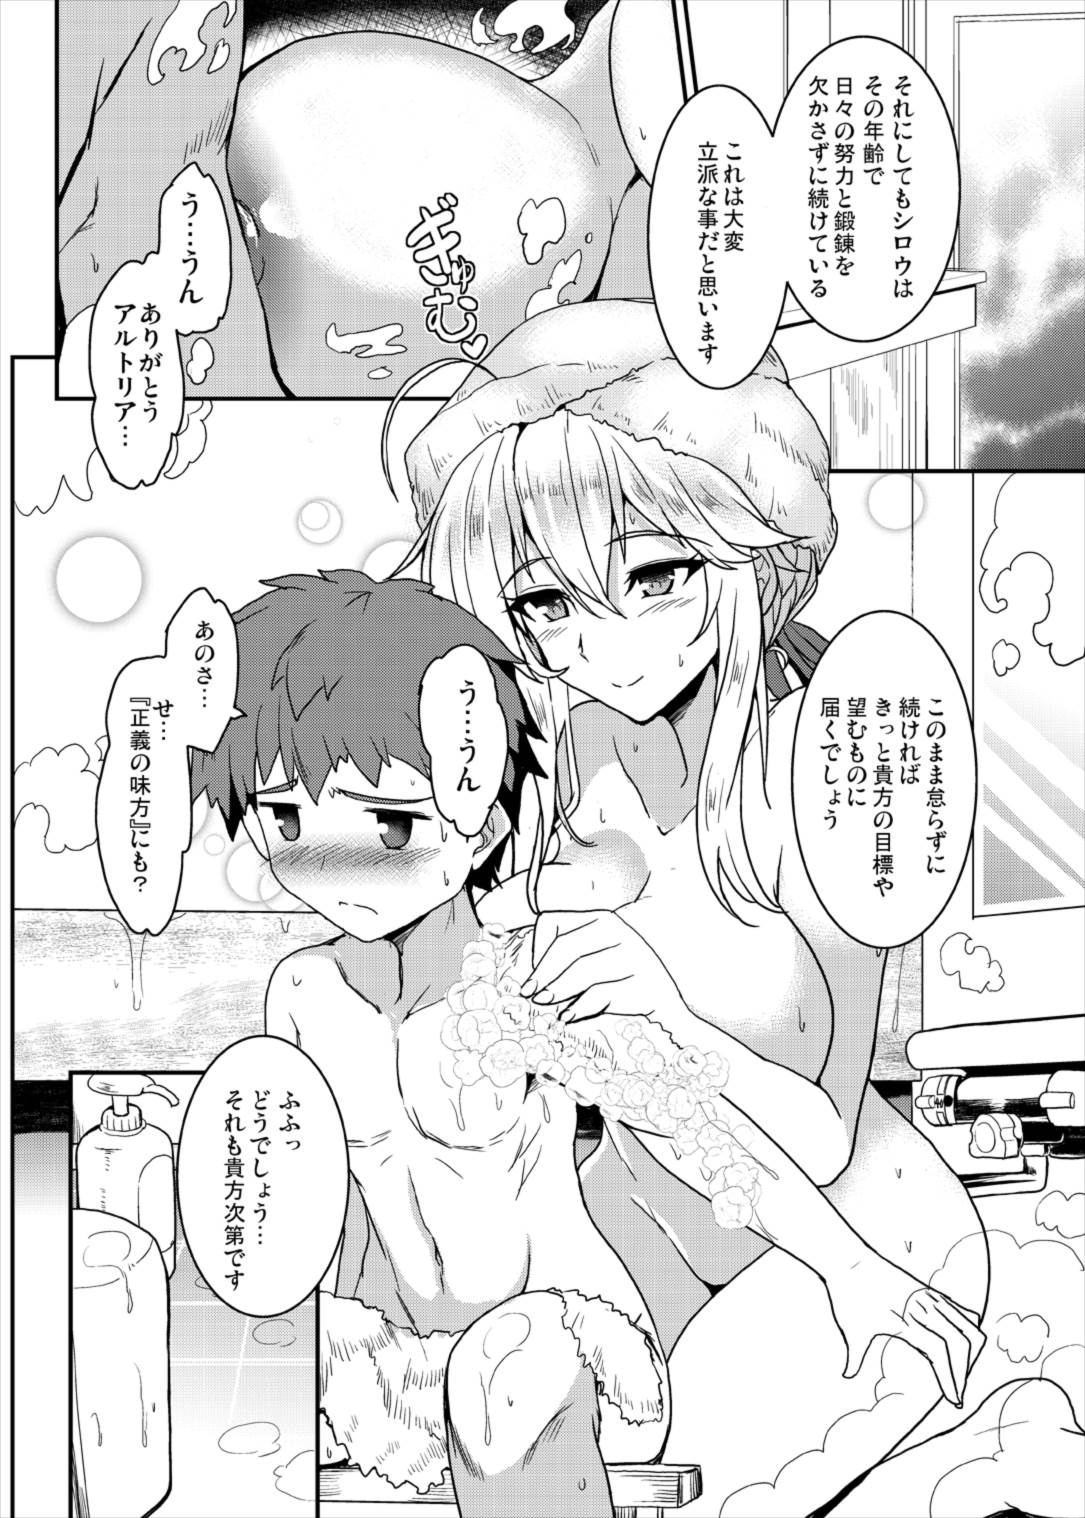 【エロ同人誌】アルトリアがお風呂でショタをたわわなおっぱいでご奉仕ｗｗｗ【Fate Grand Order/C93】